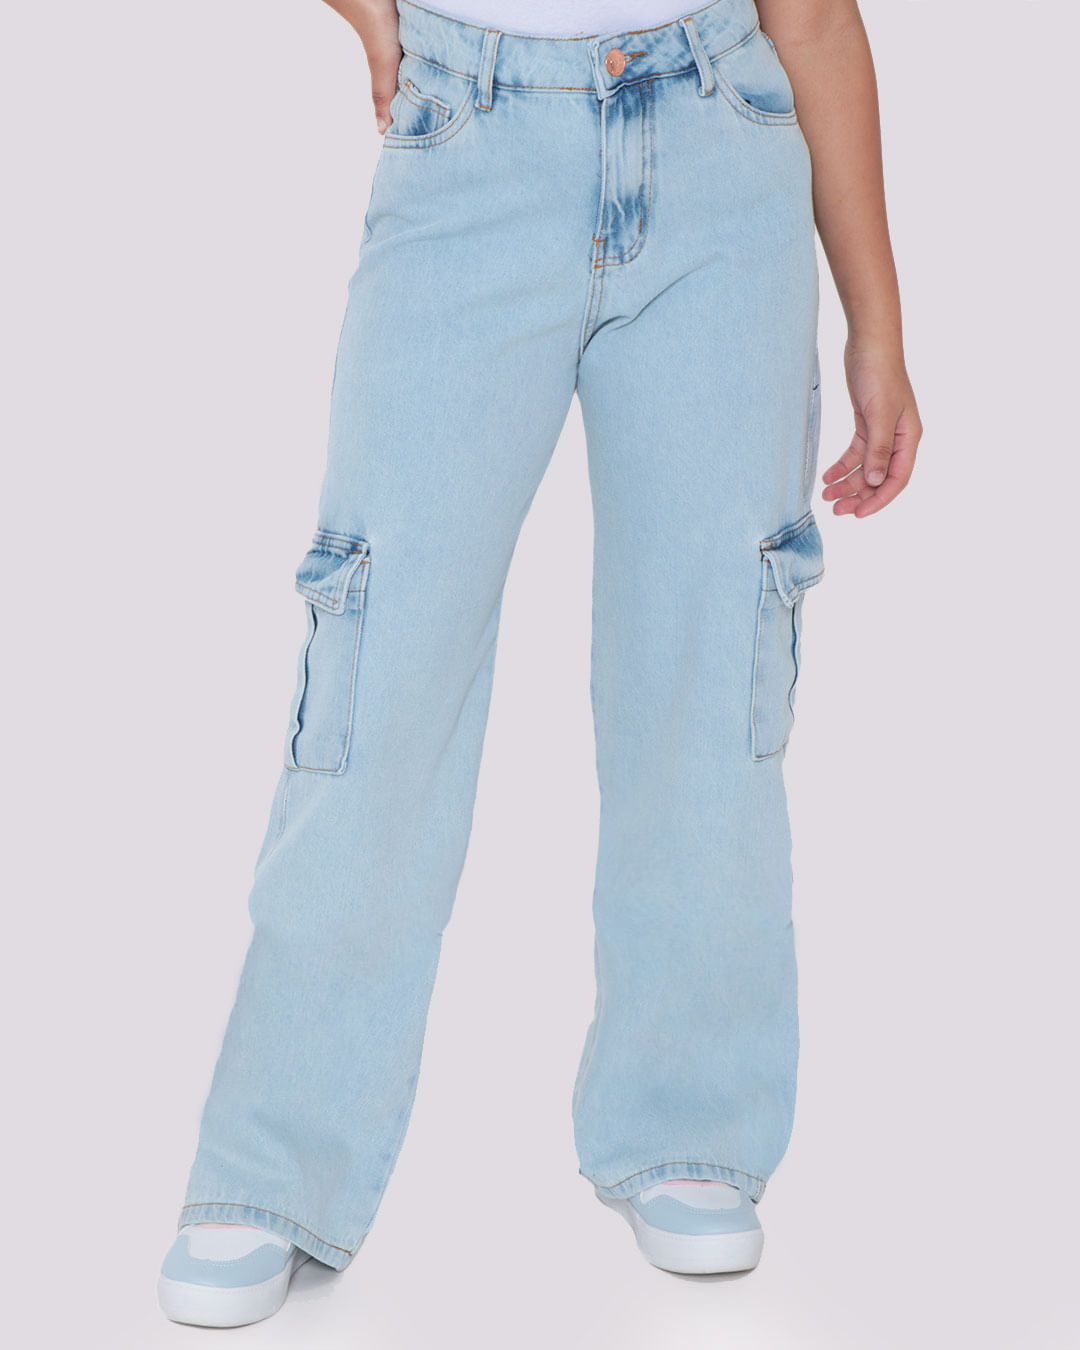 Calca-Jeans-Juvenil-Wide-Leg-Bolso-Cargo-Azul-Claro